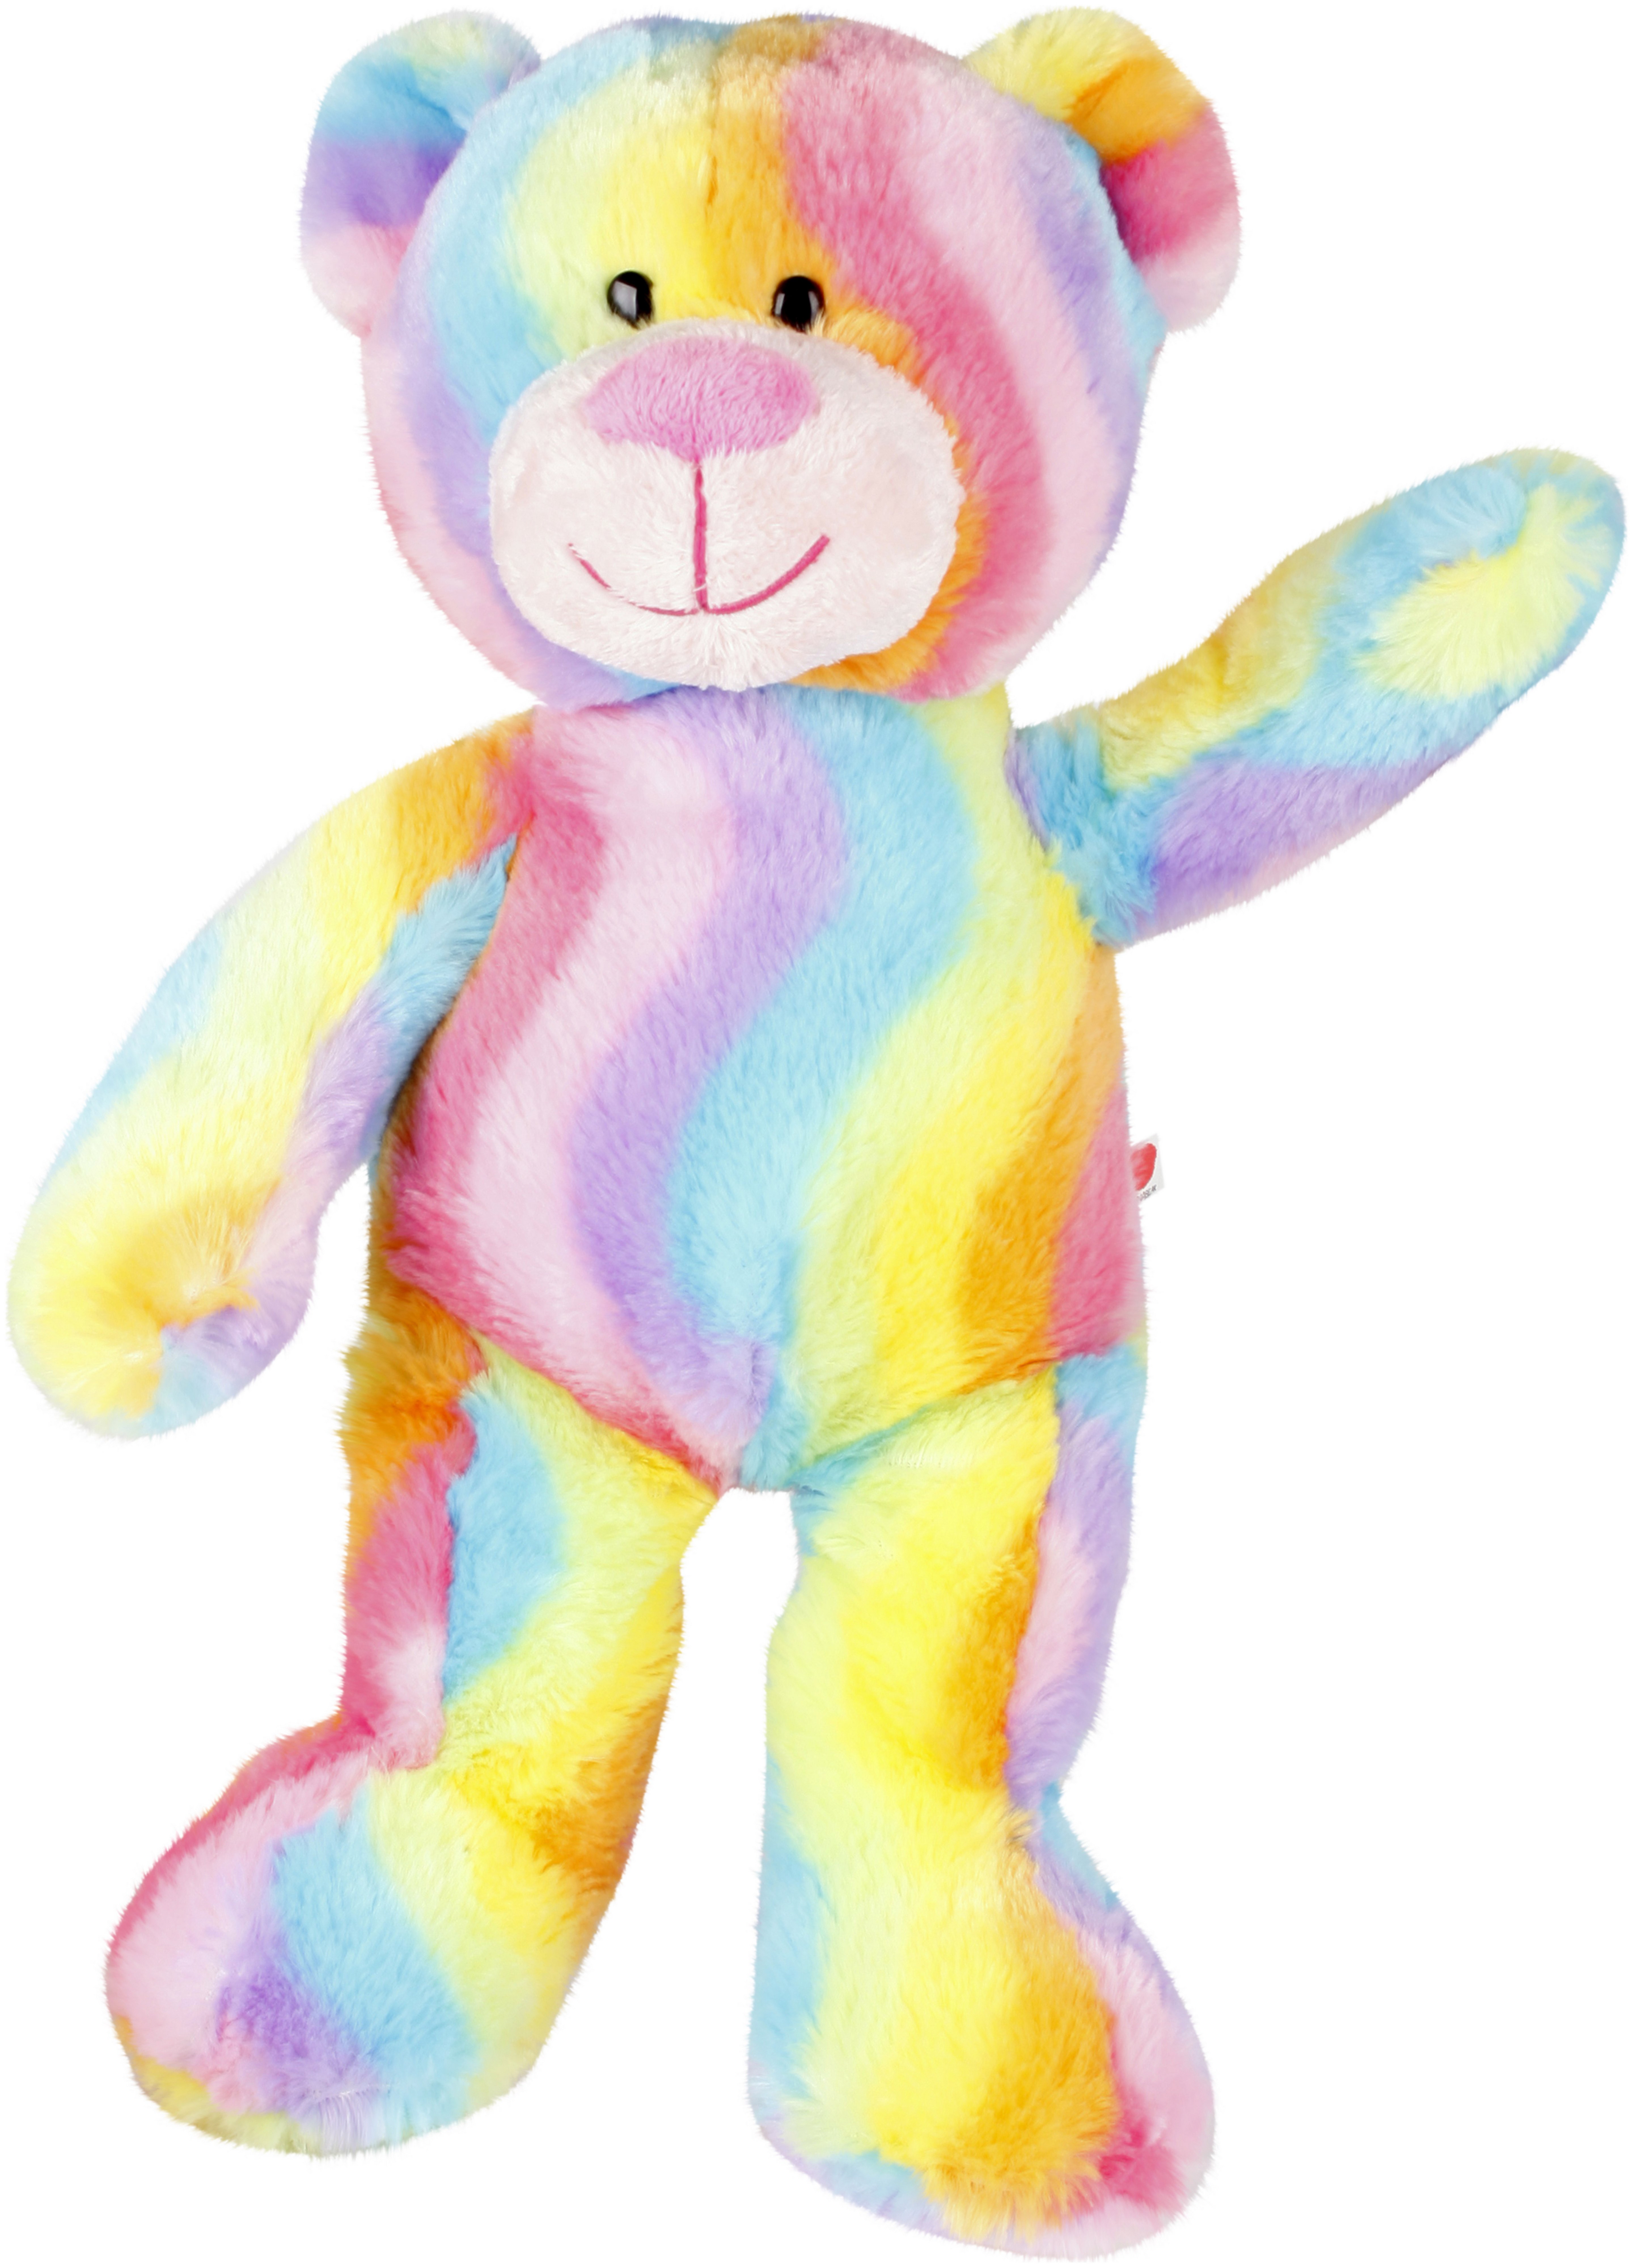 Chad Valley Designabear Rainbow Teddy Soft Toy